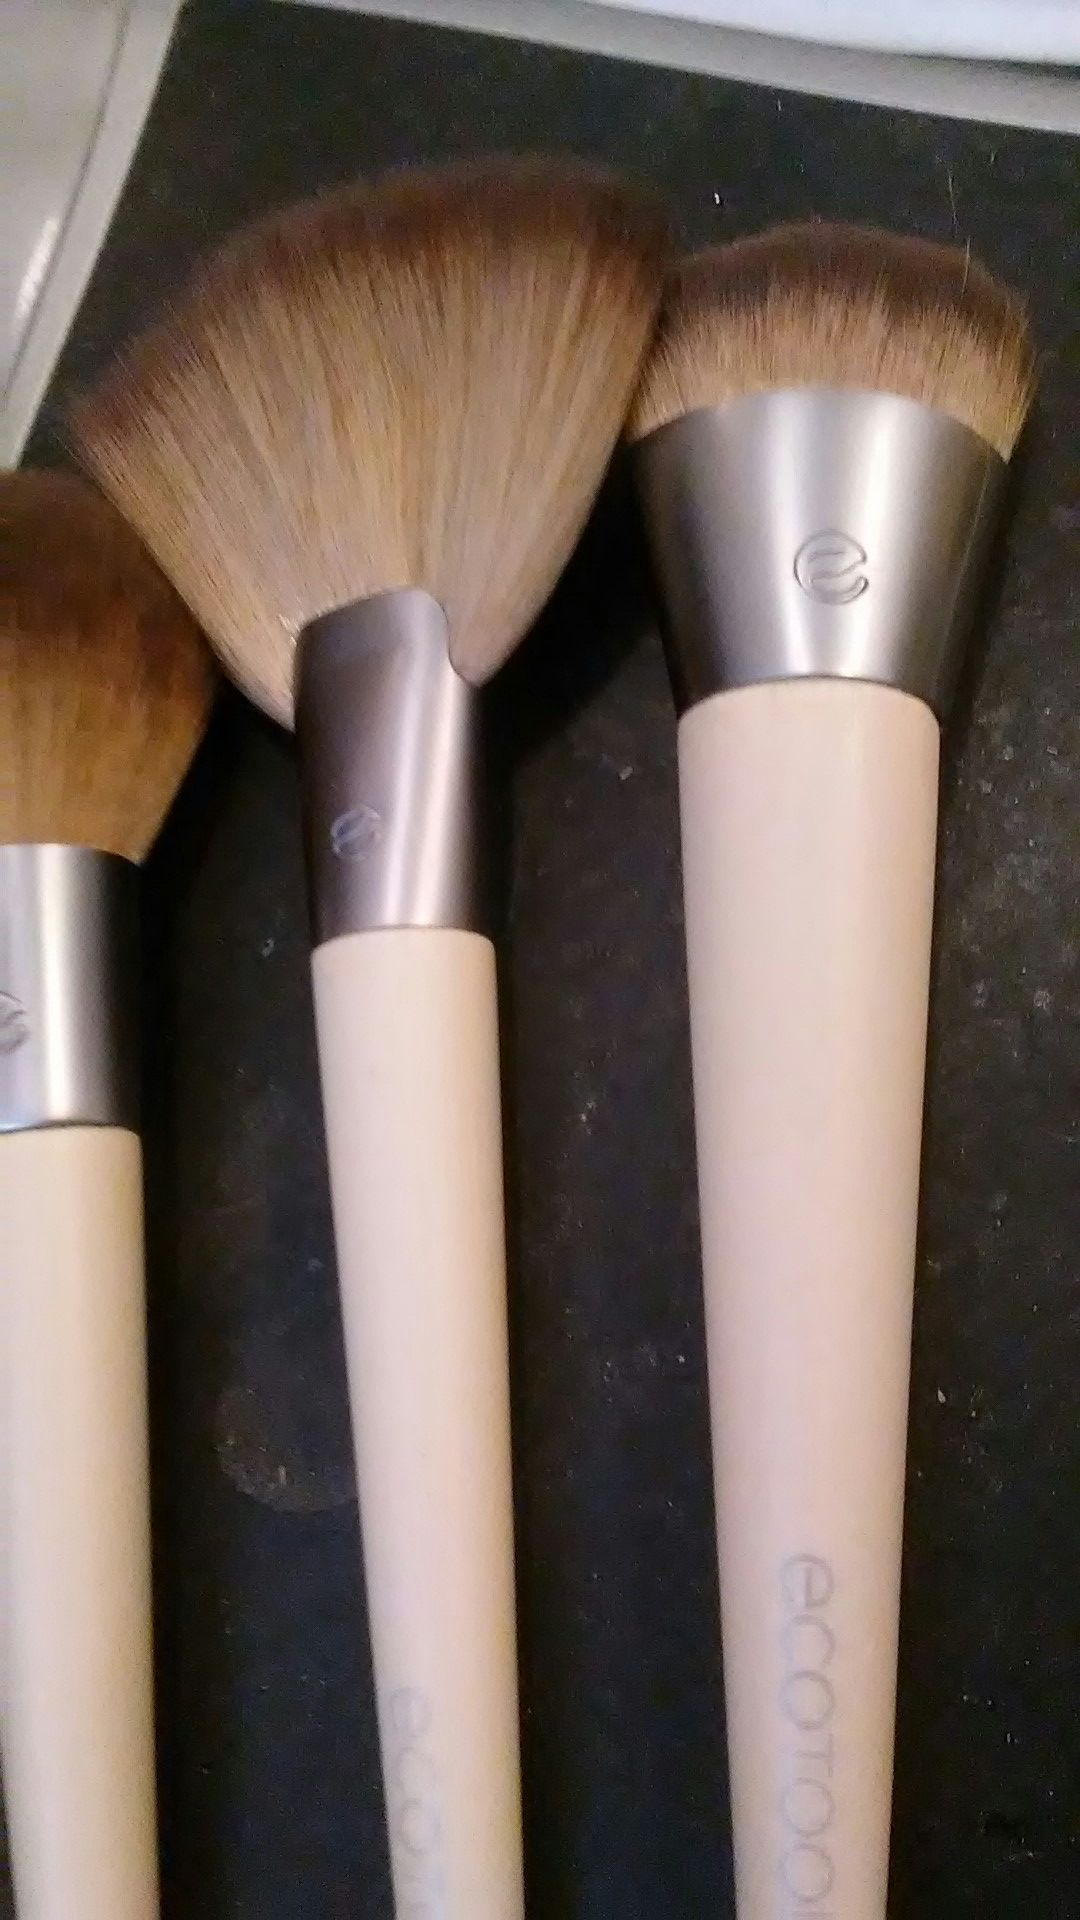 3 ECOTOOLS makeup brushes